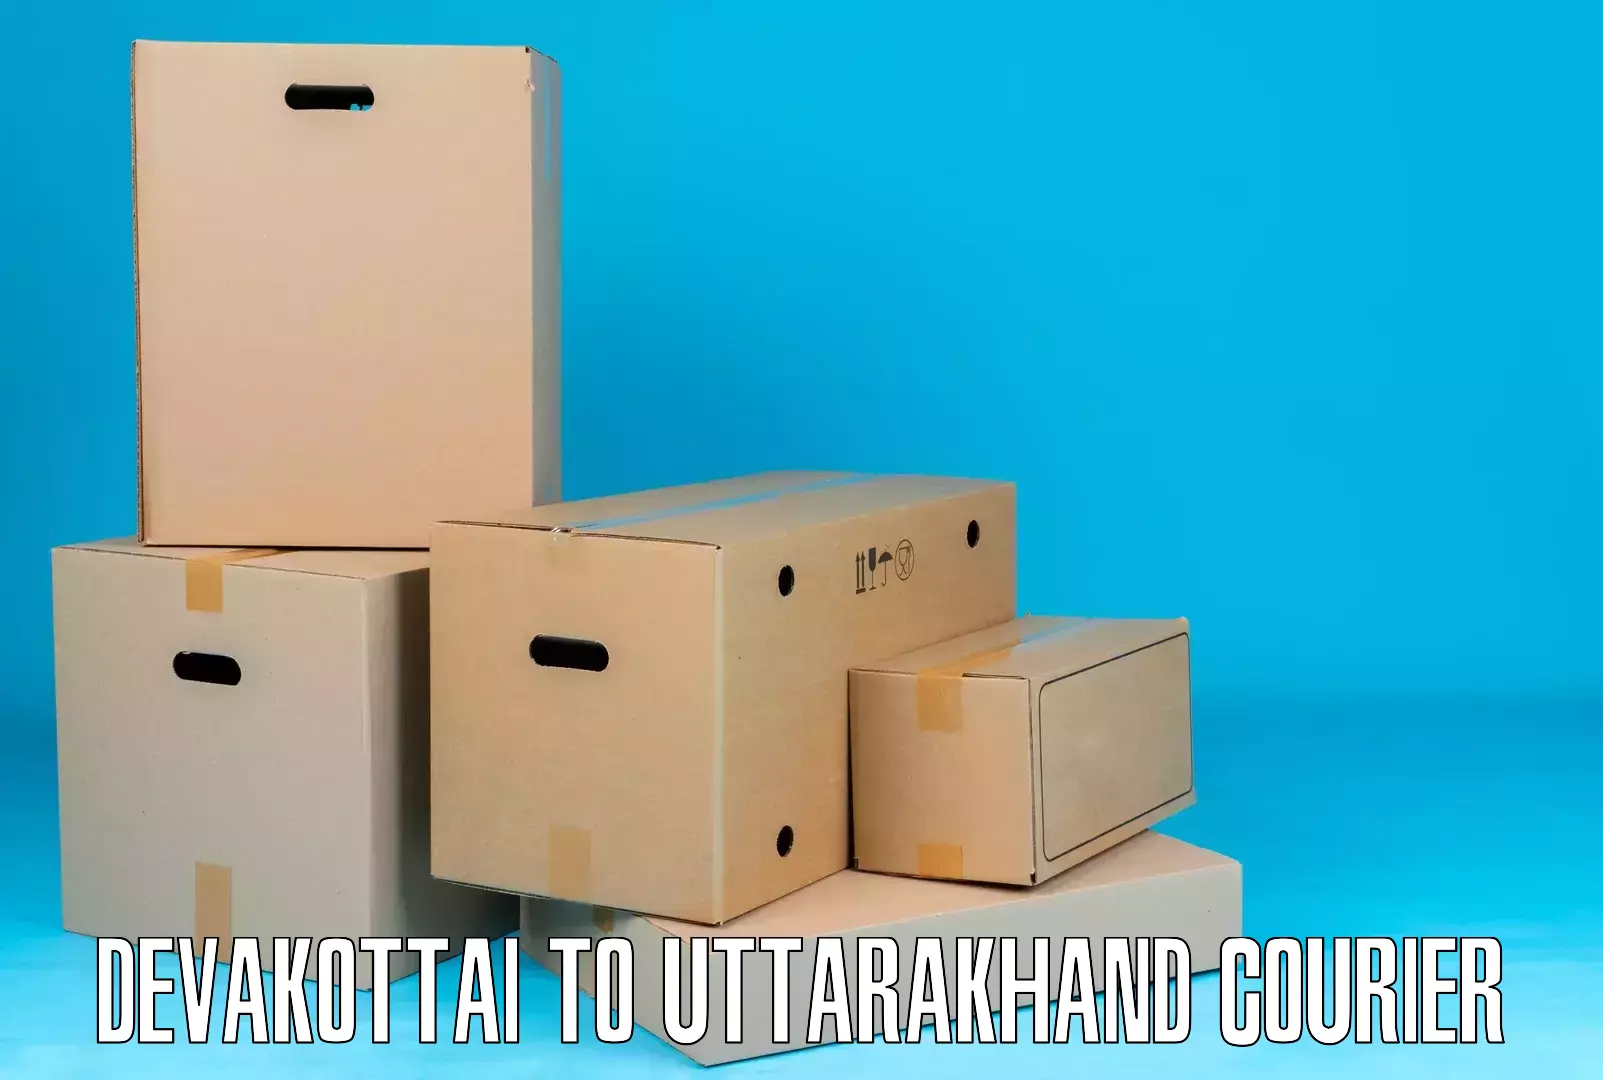 Versatile courier offerings Devakottai to Pithoragarh